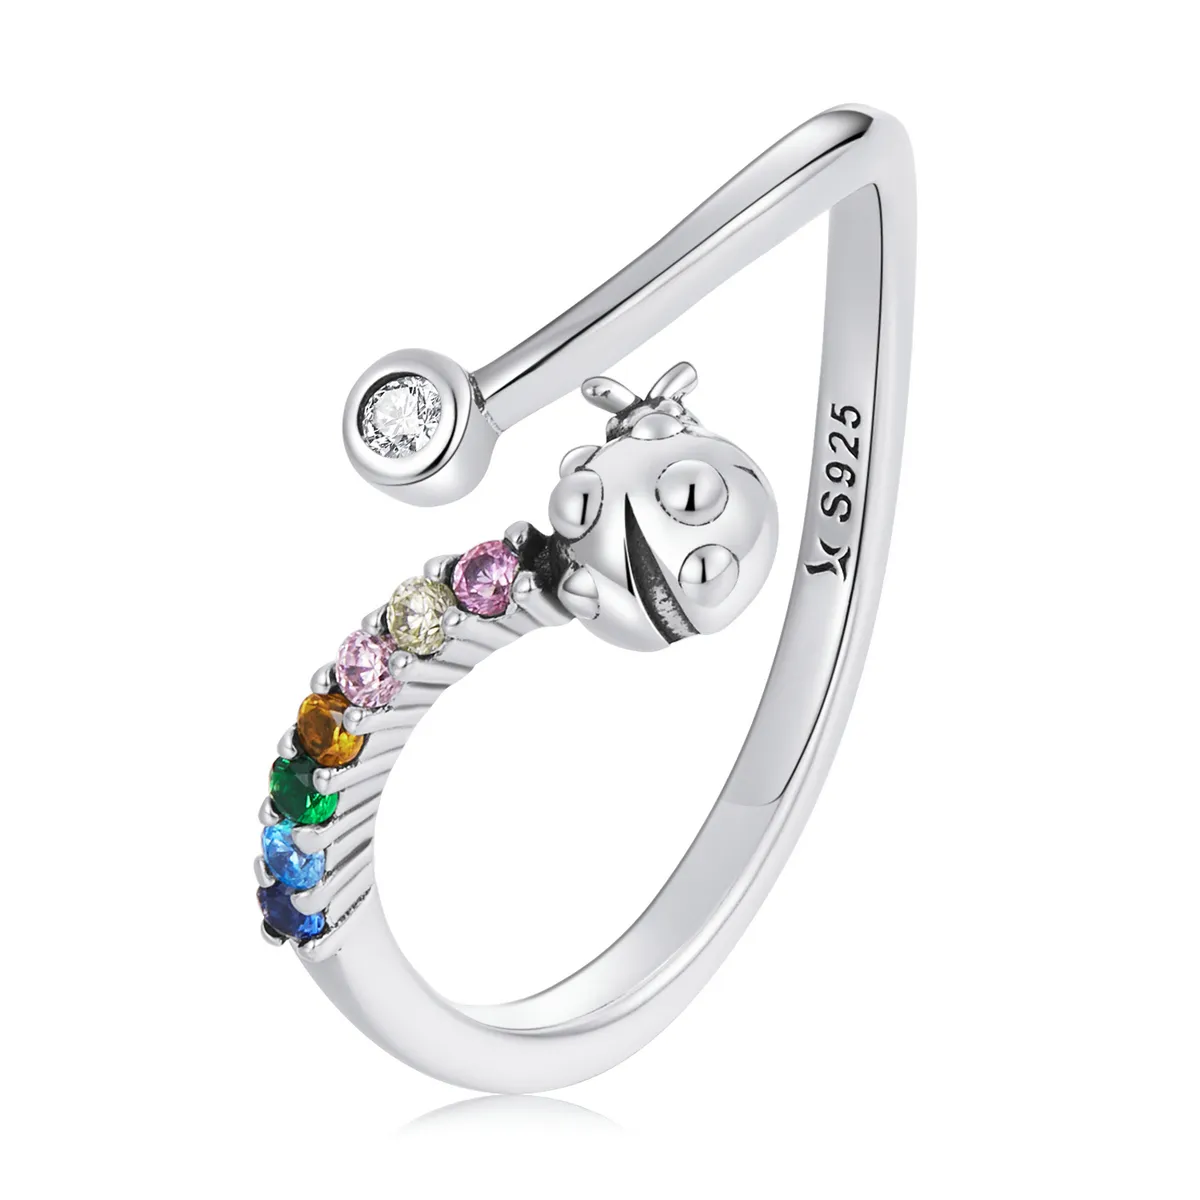 Pandora Style Colorful Zirconium Ladybug Open Ring - SCR785